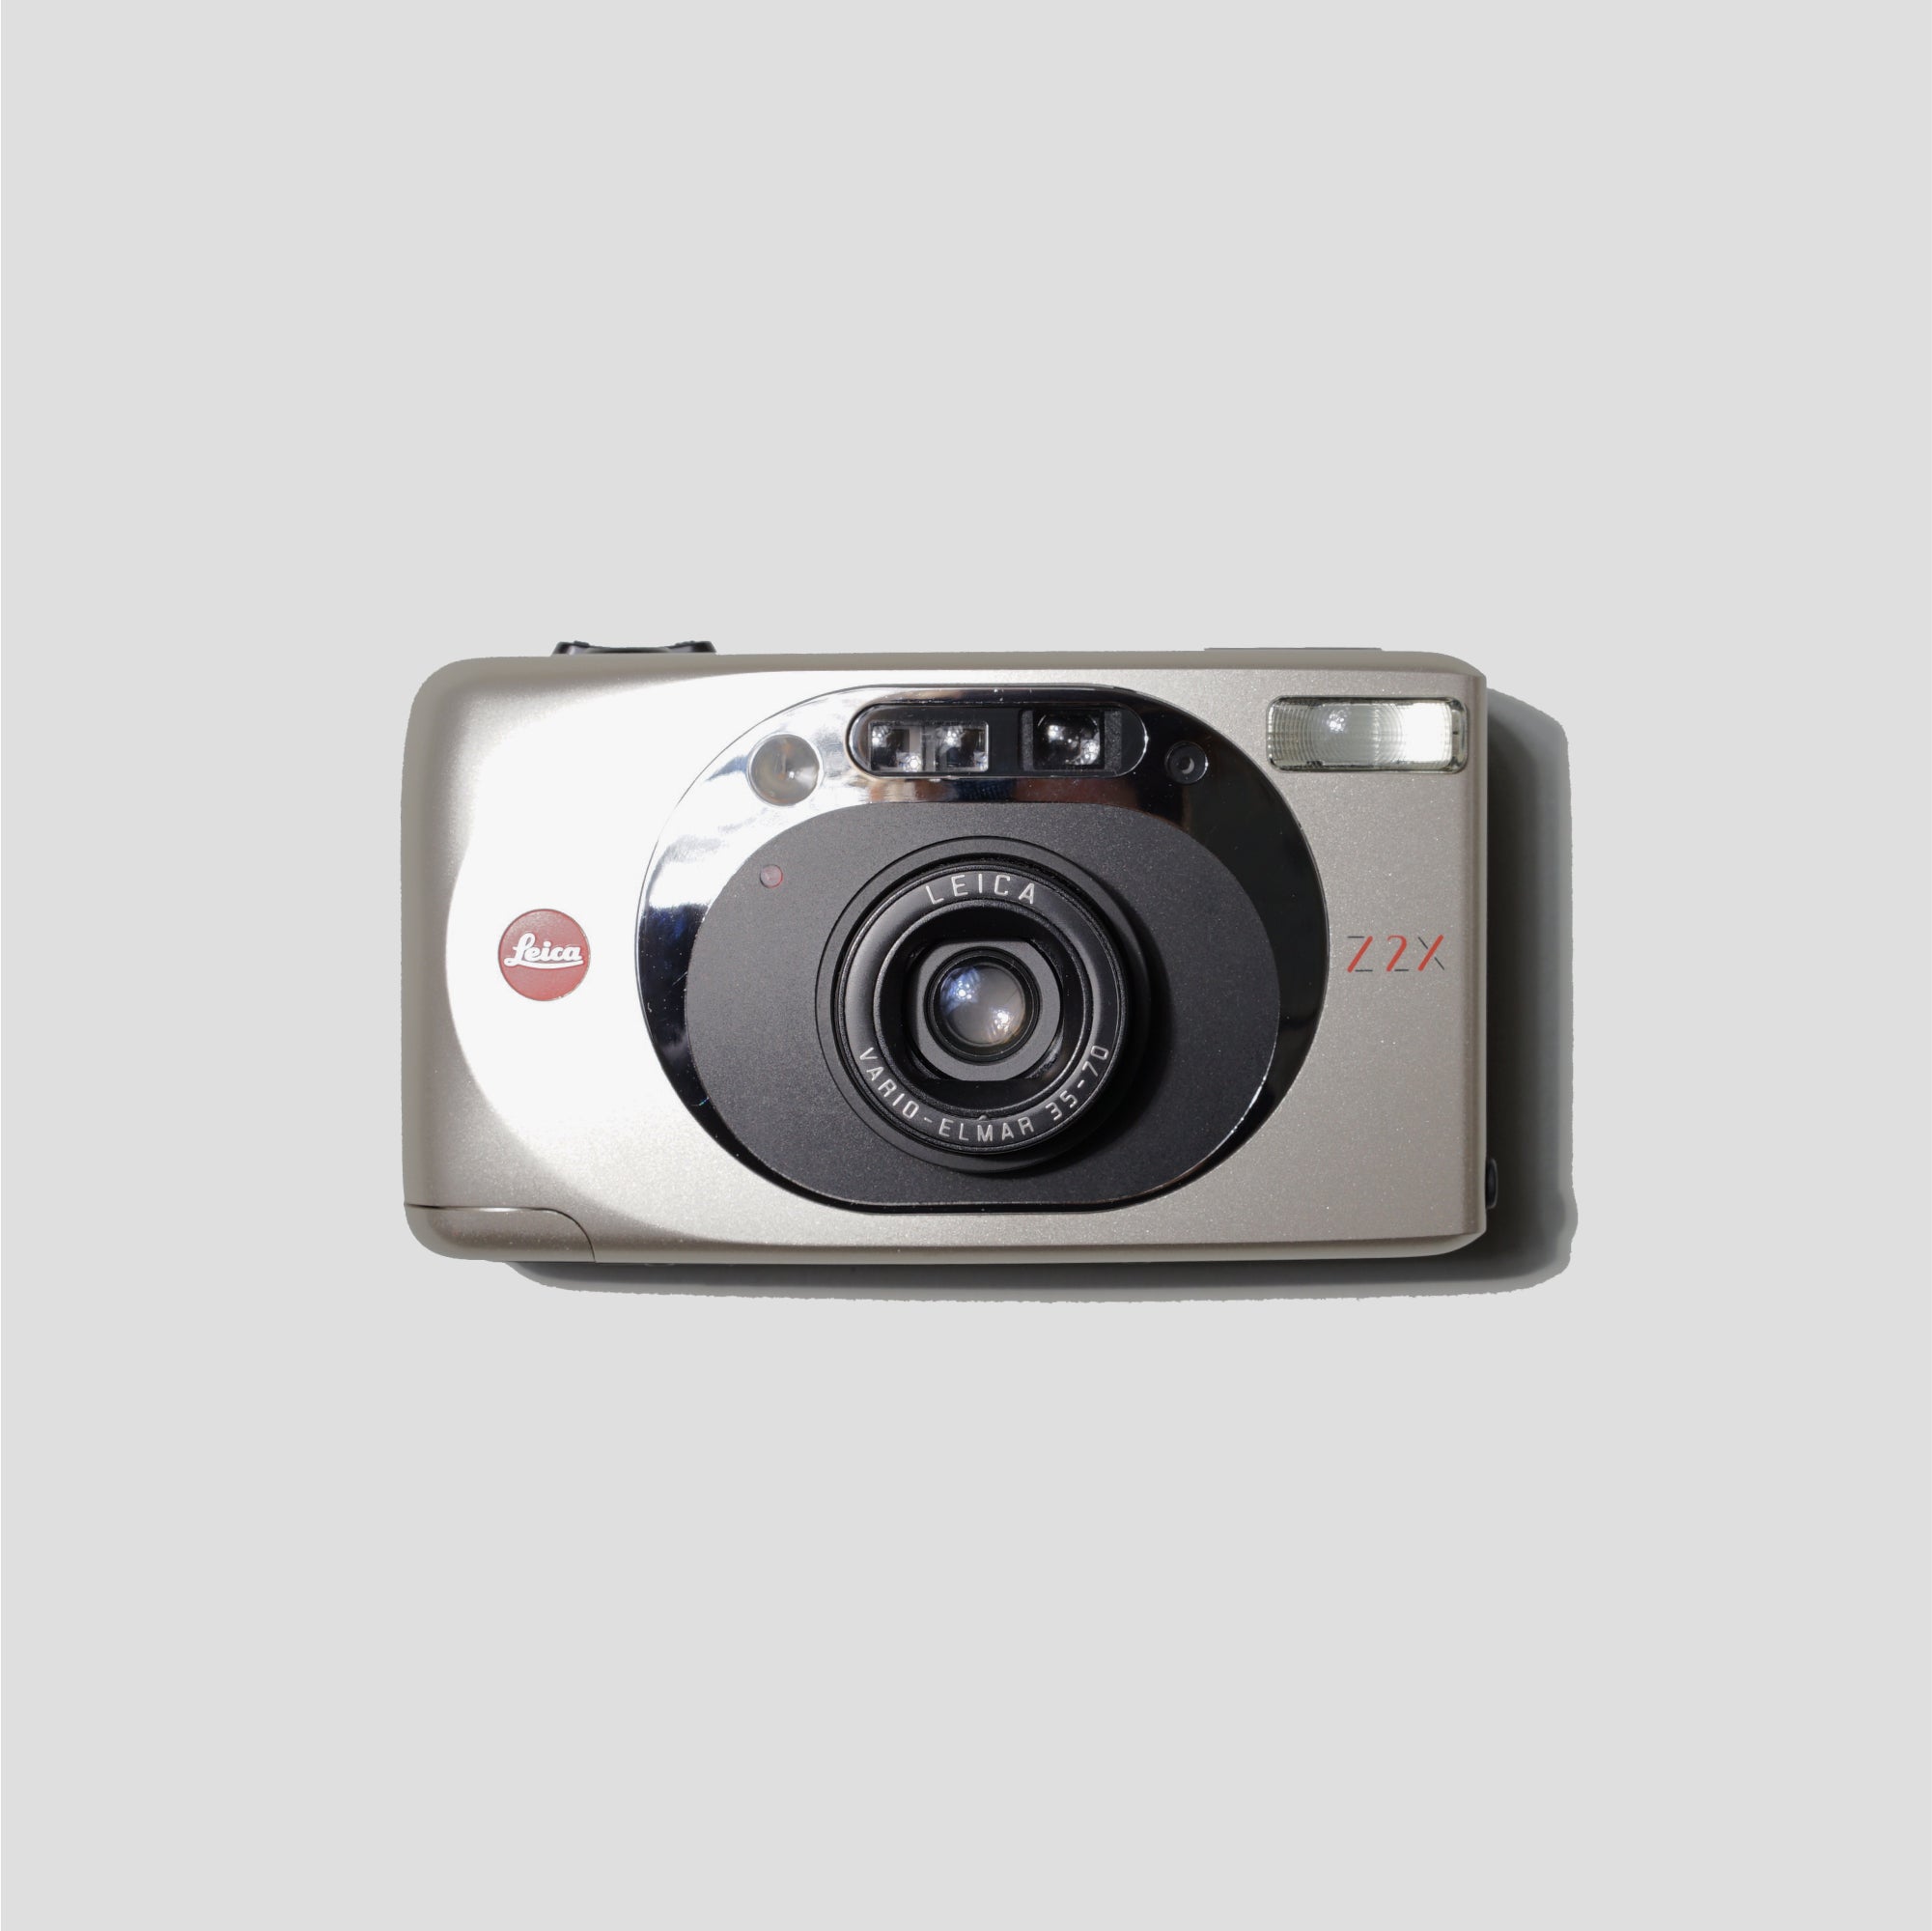 Leica Z2X Grey